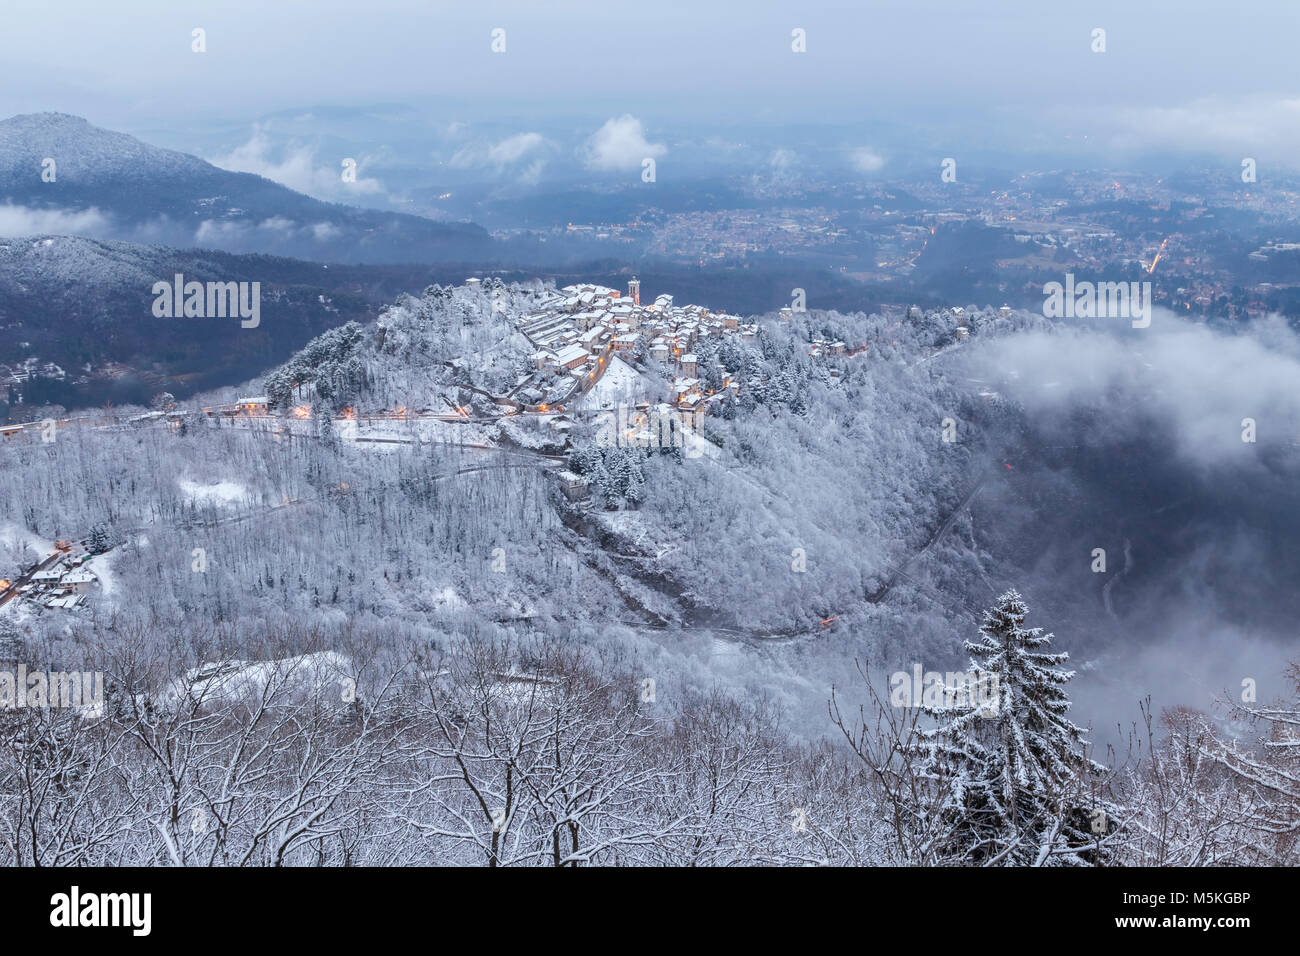 View of Santa Maria del Monte after a snowfall in winter from the Campo dei Fiori. Campo dei Fiori, Varese, Parco Campo dei Fiori, Lombardy, Italy. Stock Photo